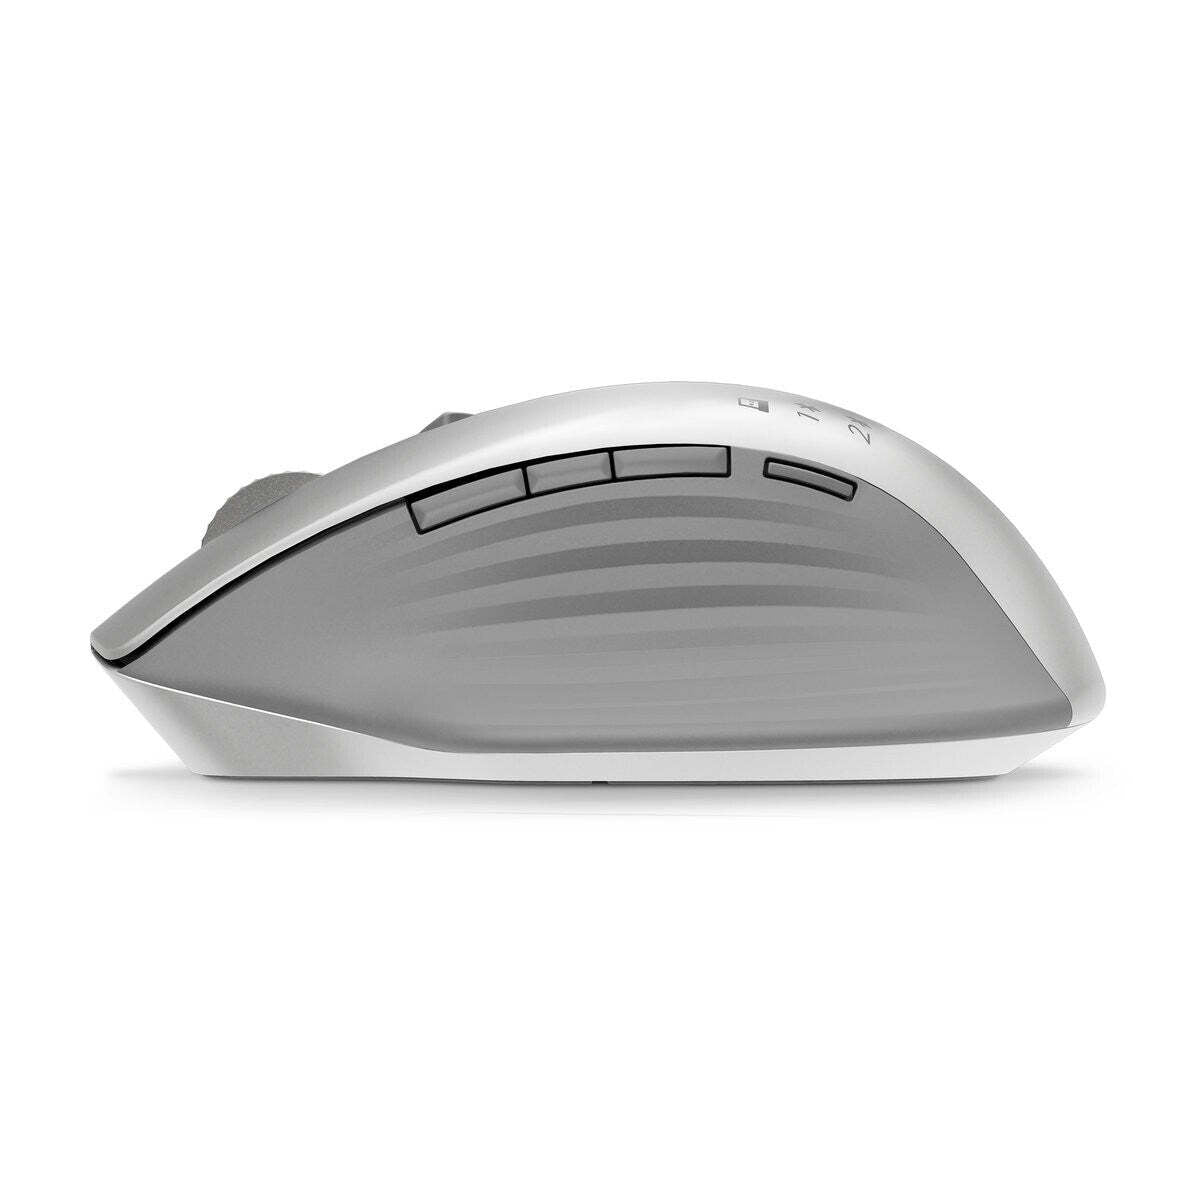 Bezdrôtová myš HP 930 Creator (1D0K9AA) VYBALENÉ